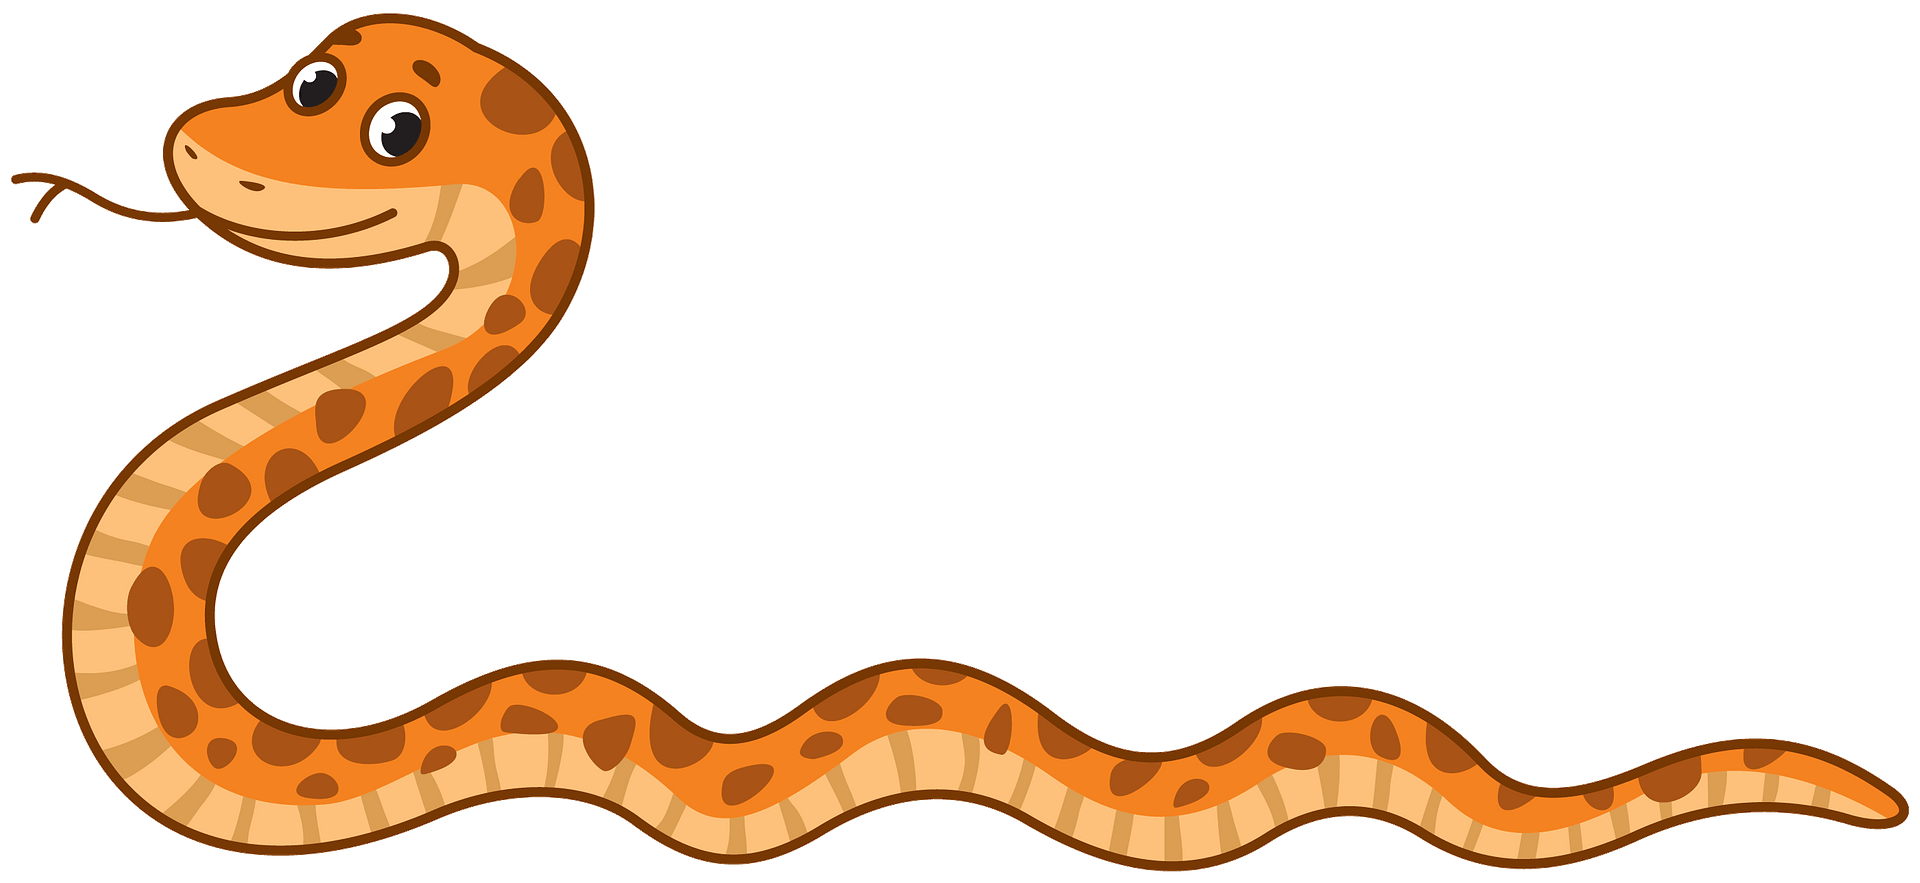 Змея картинка для детей. Змея мультяшная.